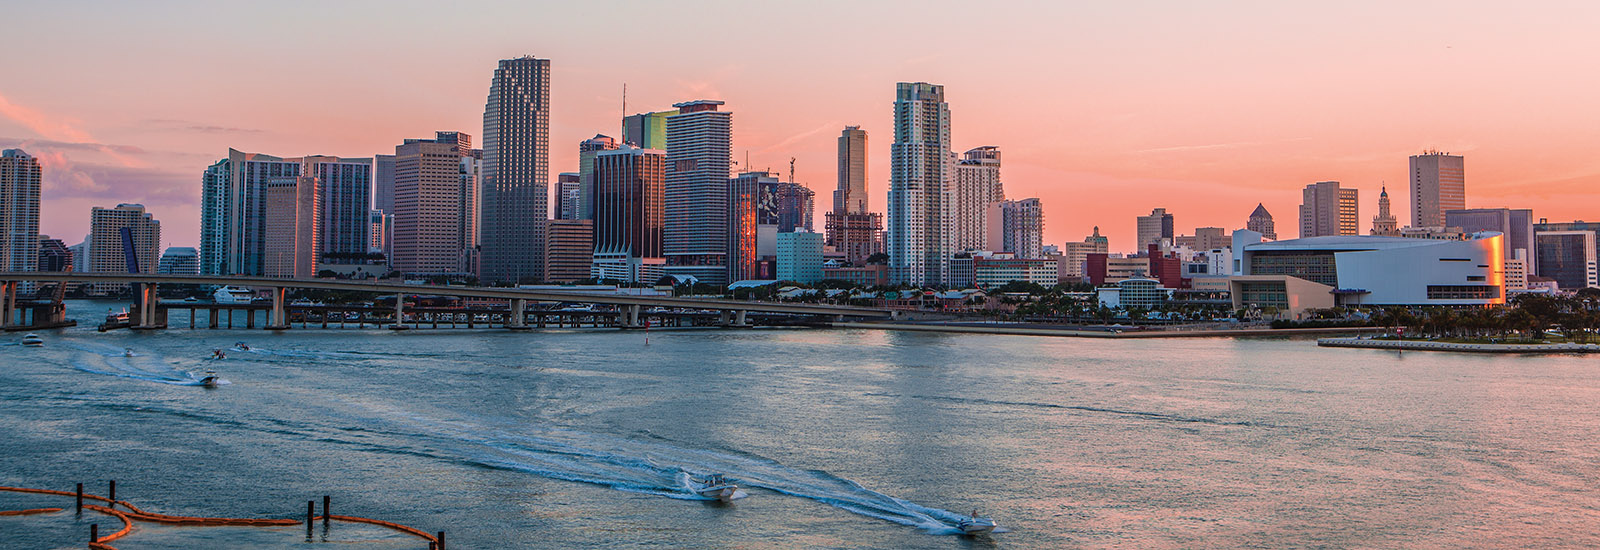 sunset in Miami 